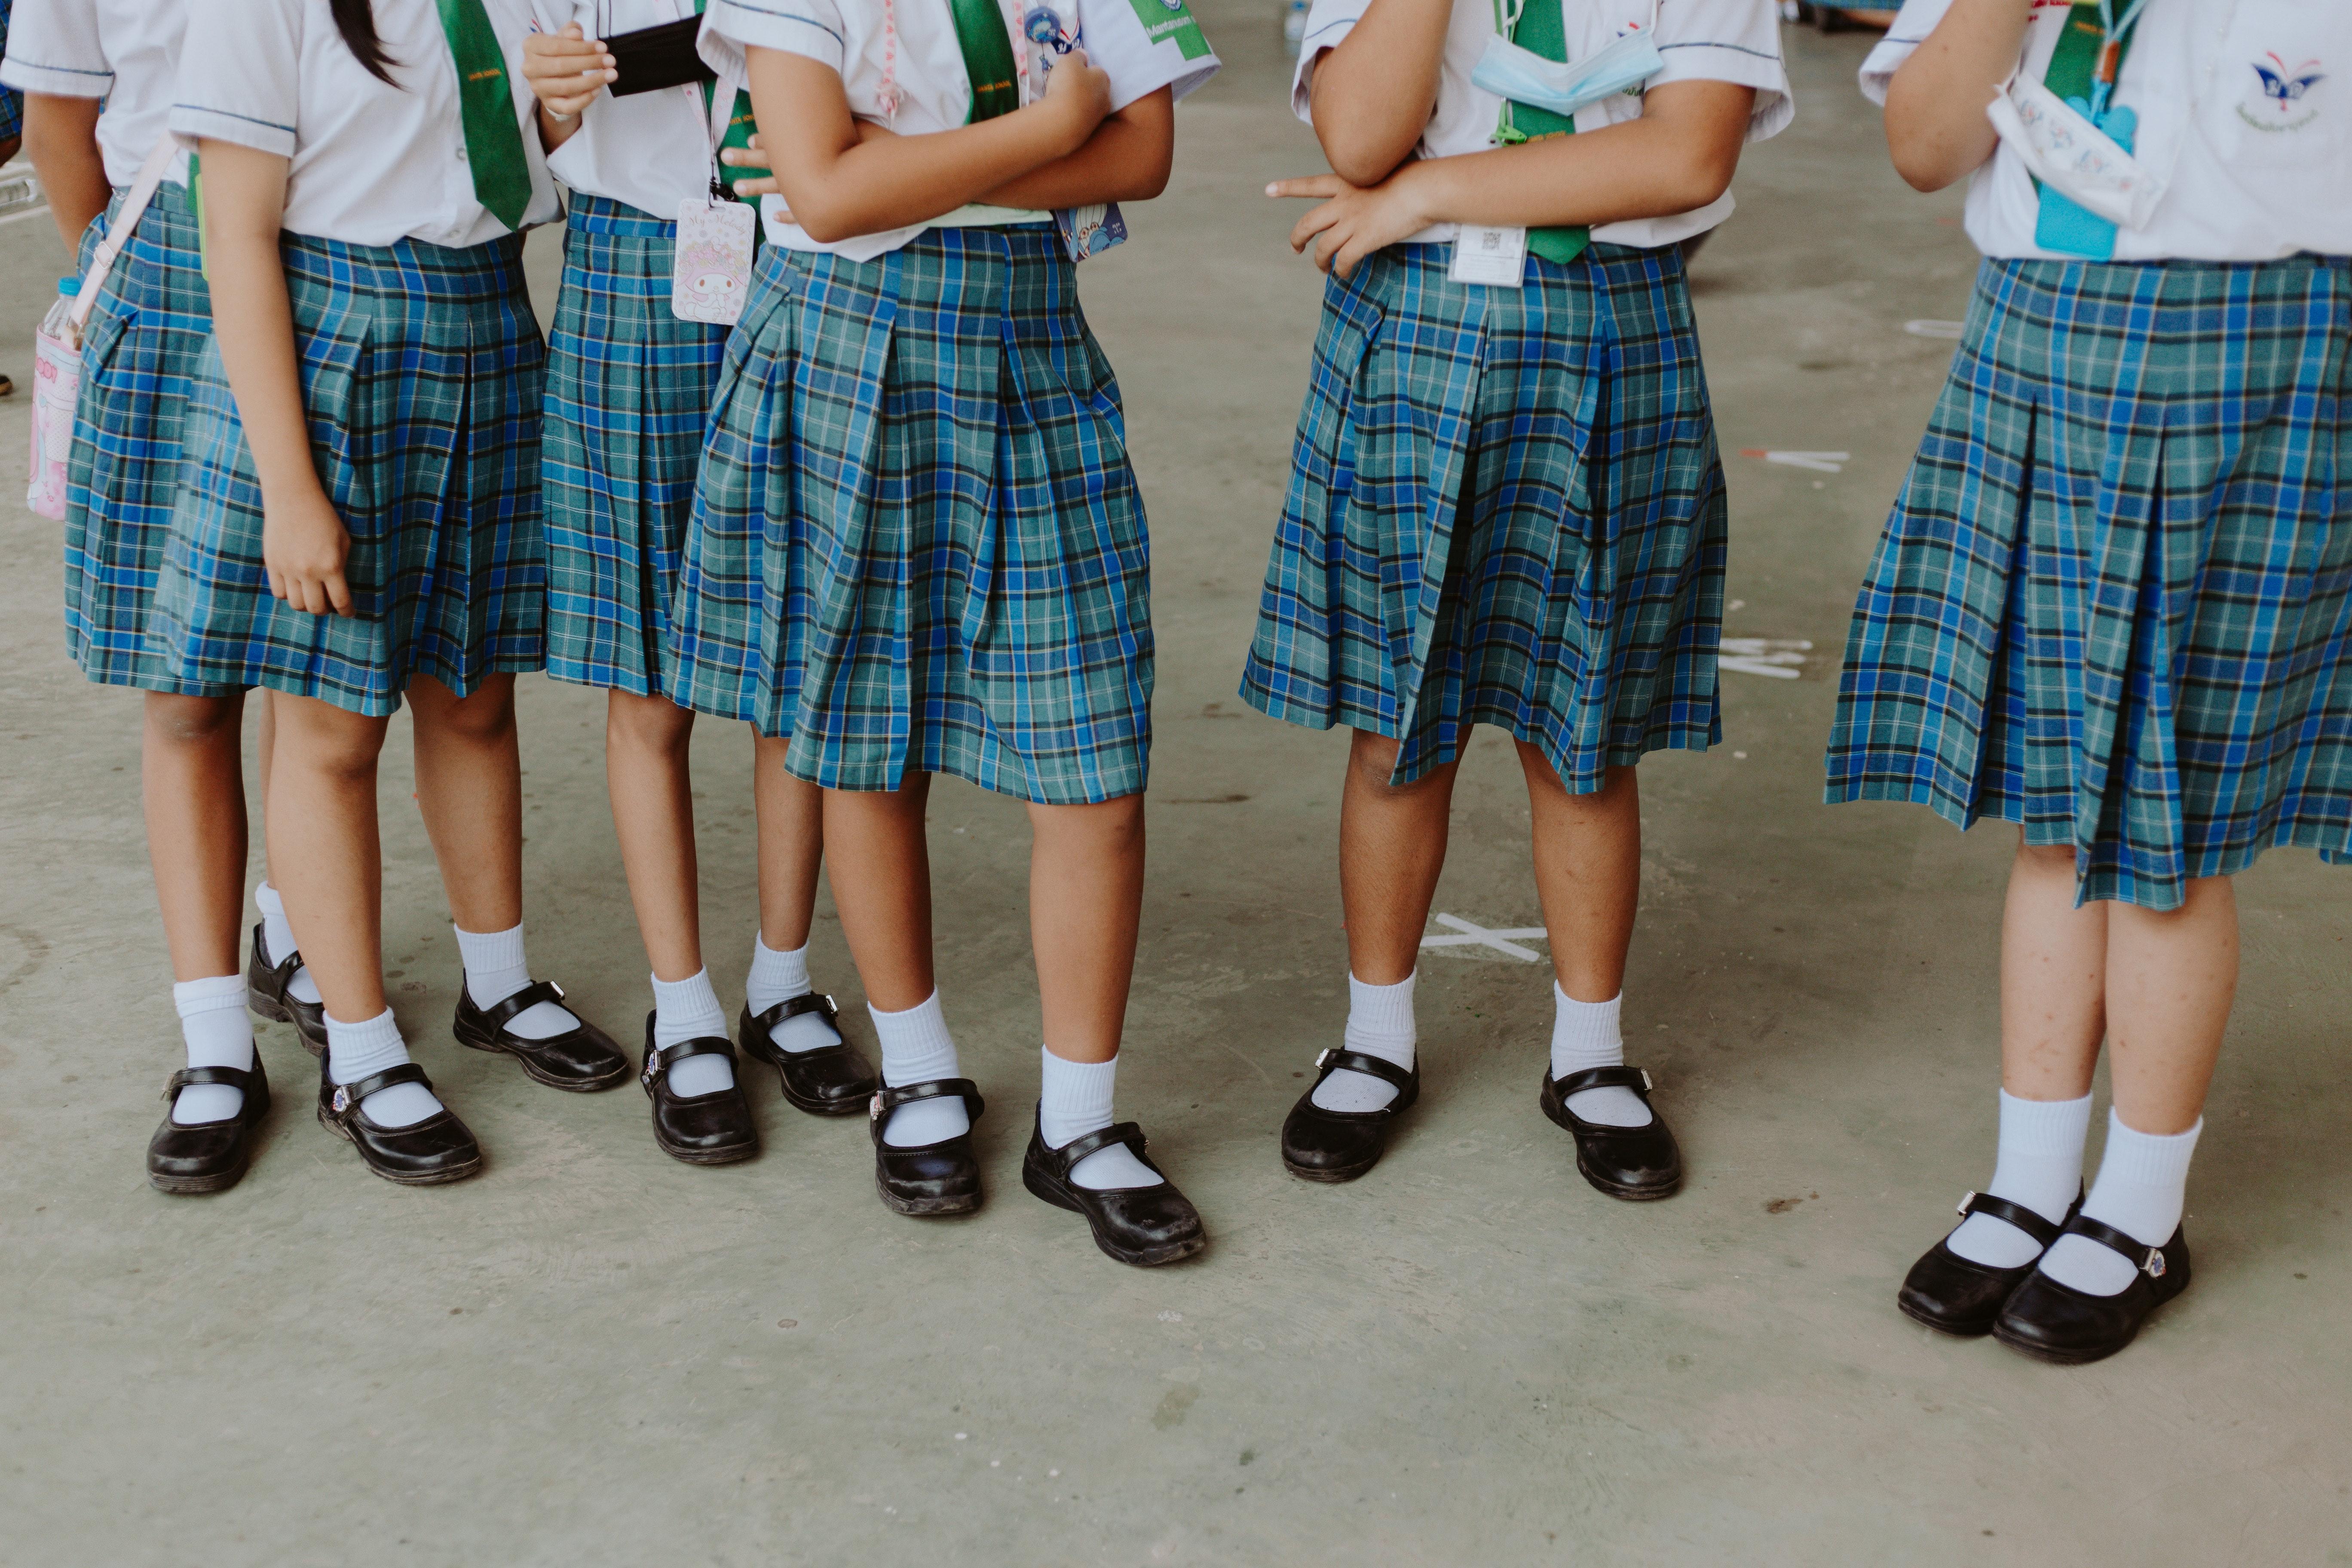 What does school uniform symbolize? 